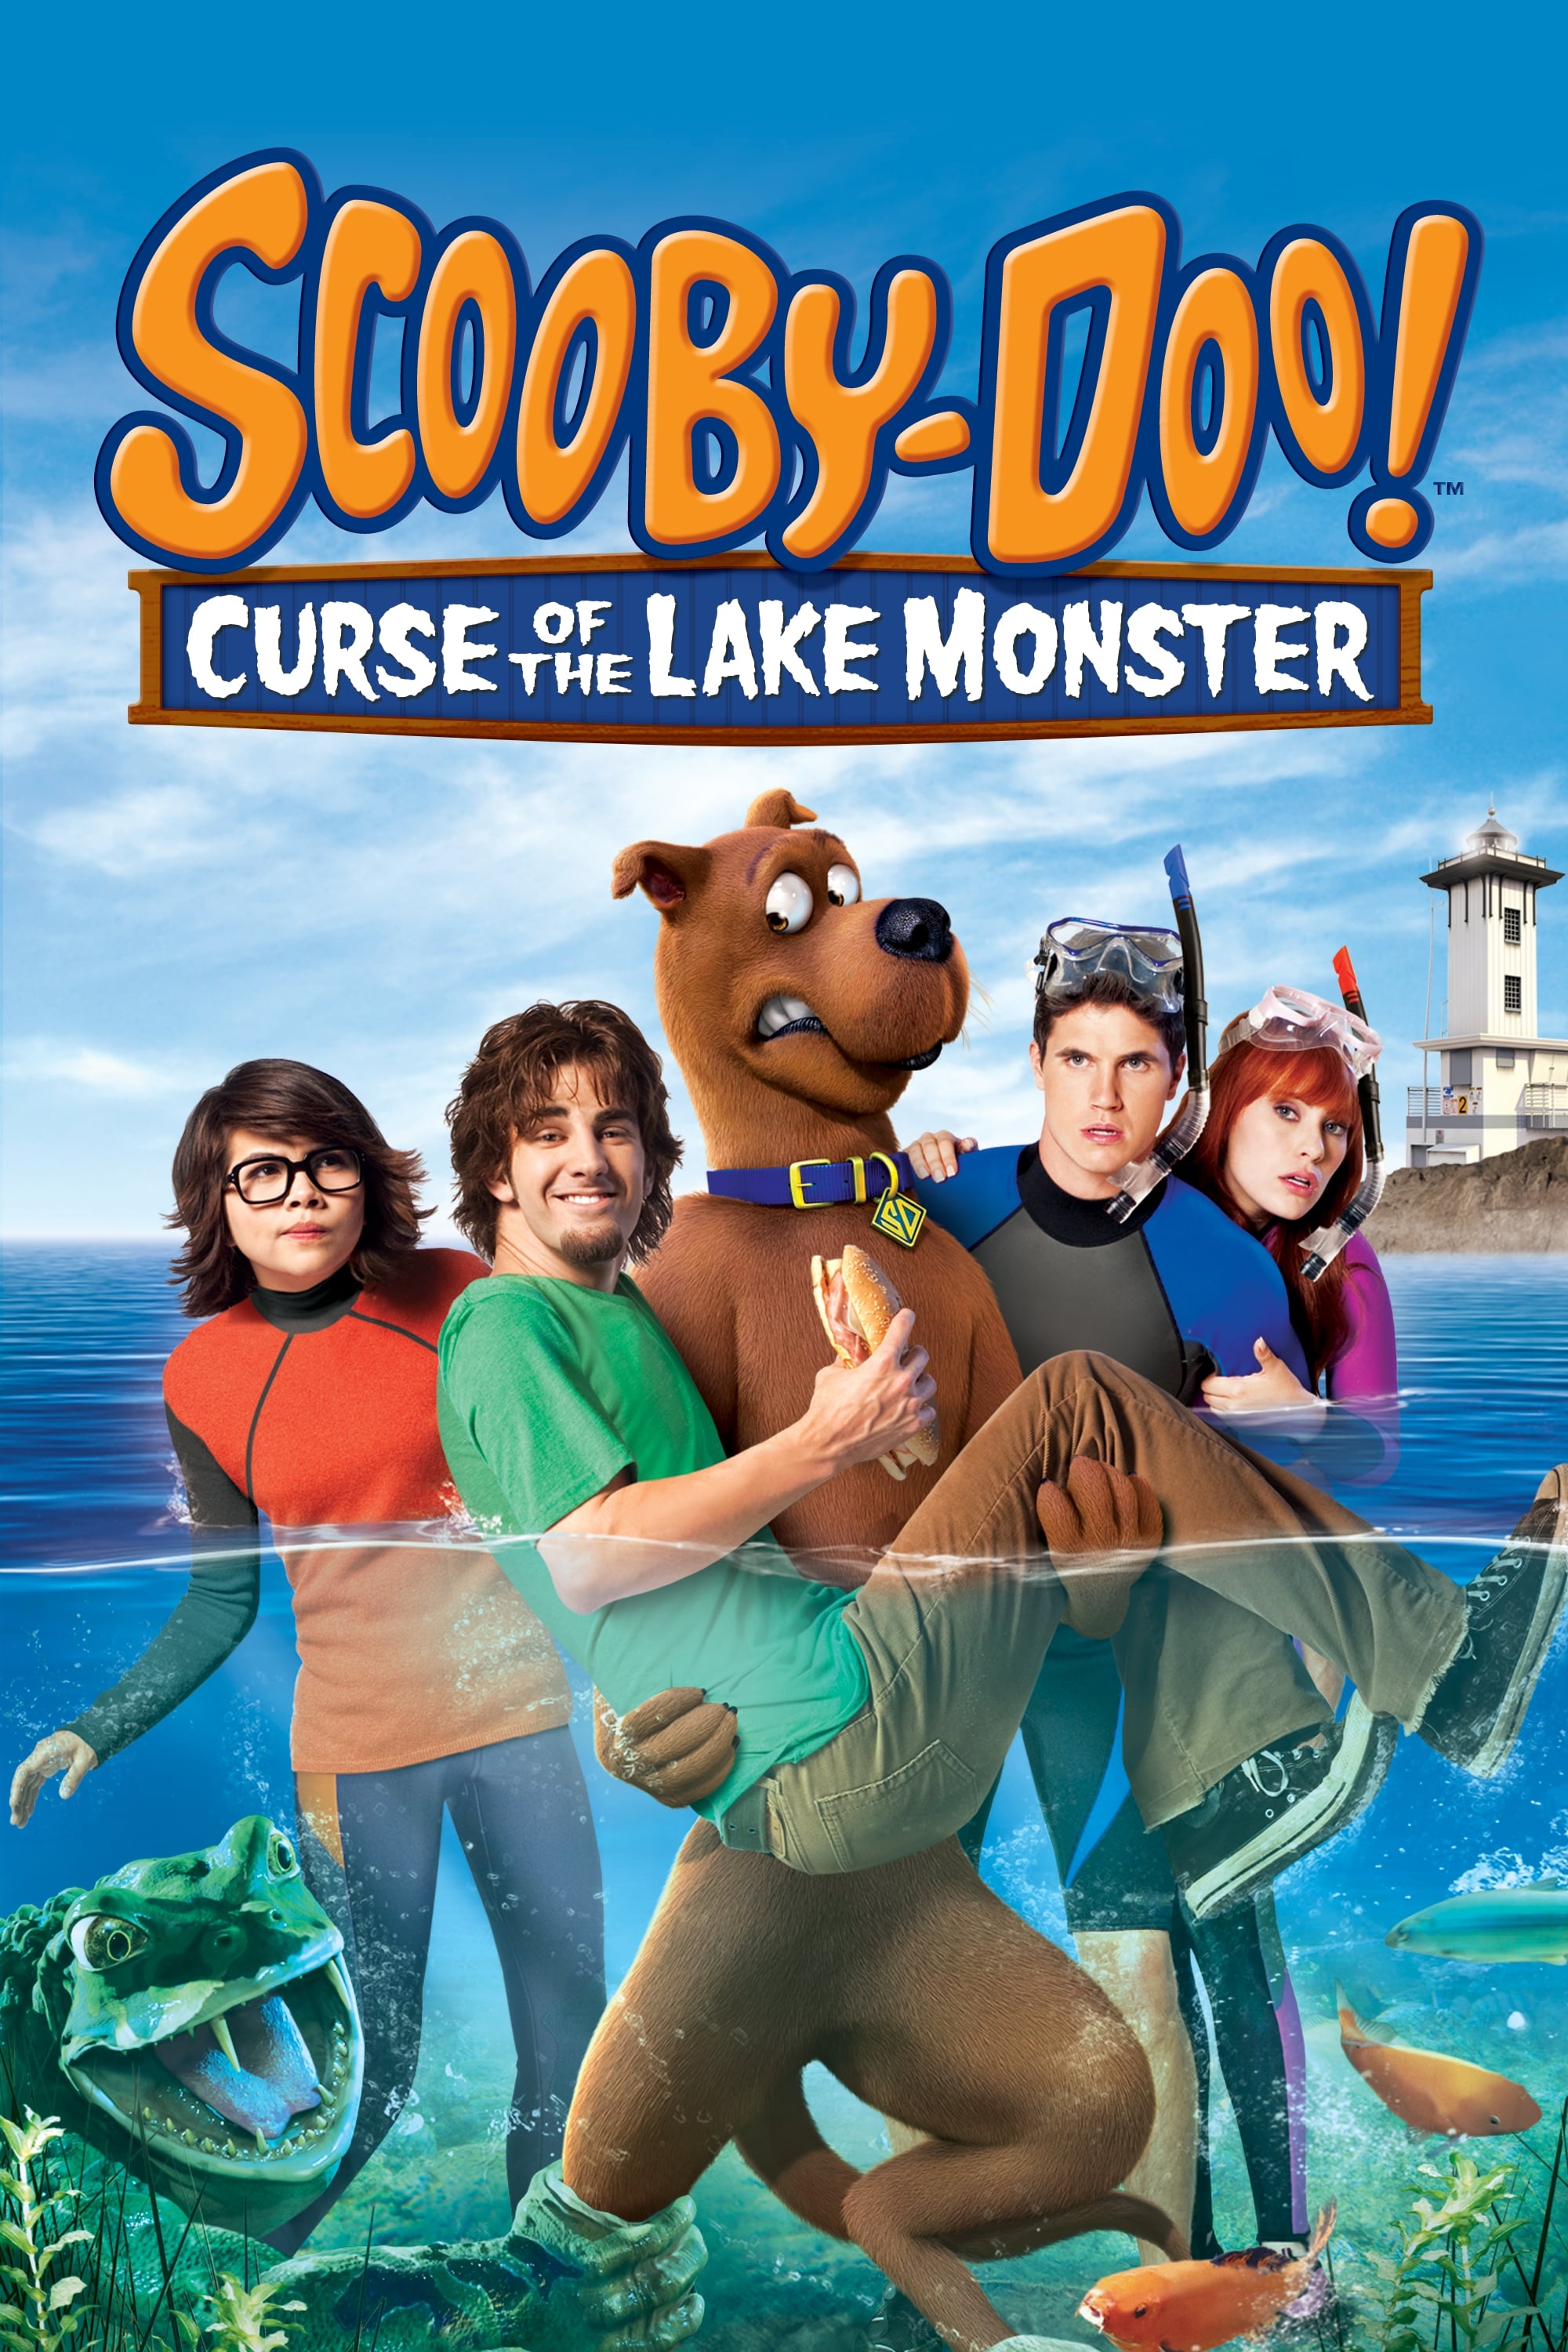 Scooby-Doo! e a Maldição do Monstro do Lago